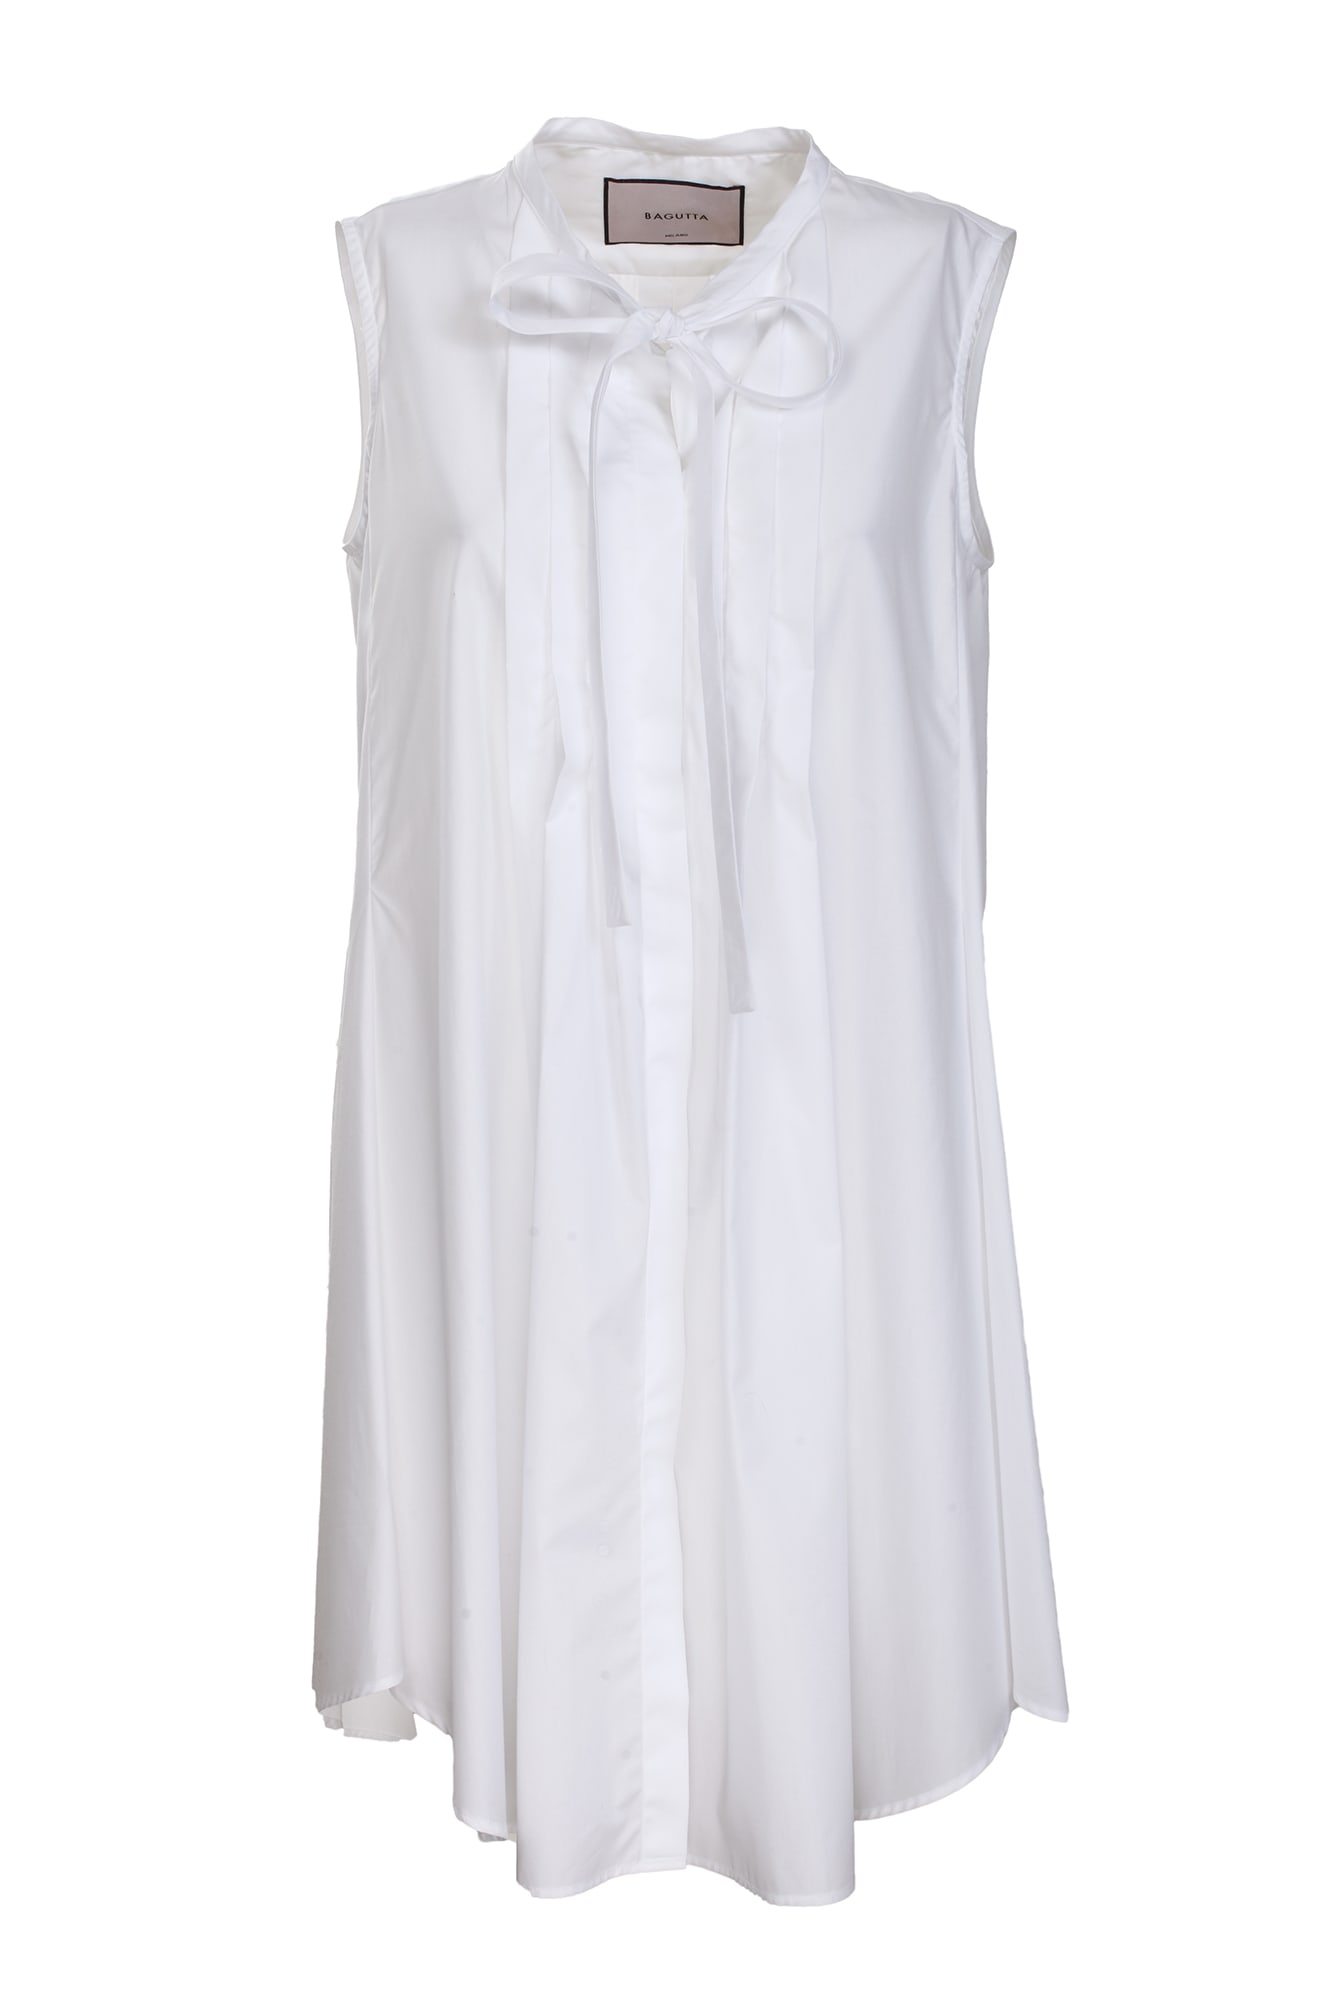 Bagutta white cotton shirt